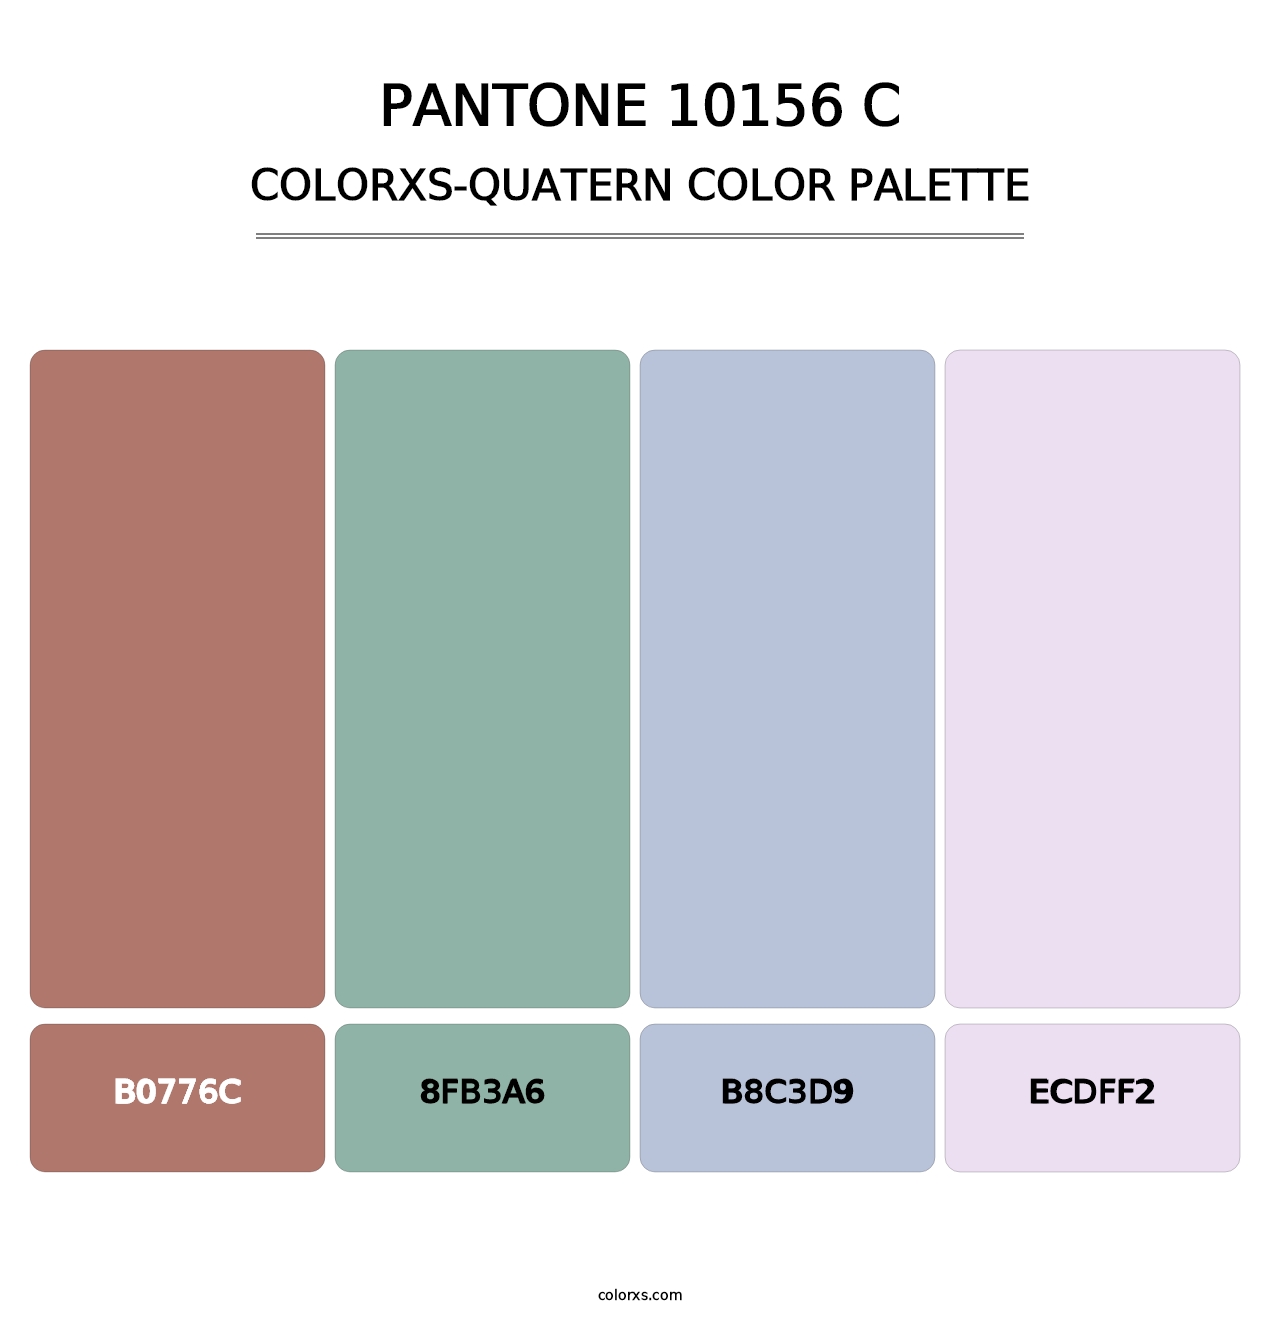 PANTONE 10156 C - Colorxs Quatern Palette